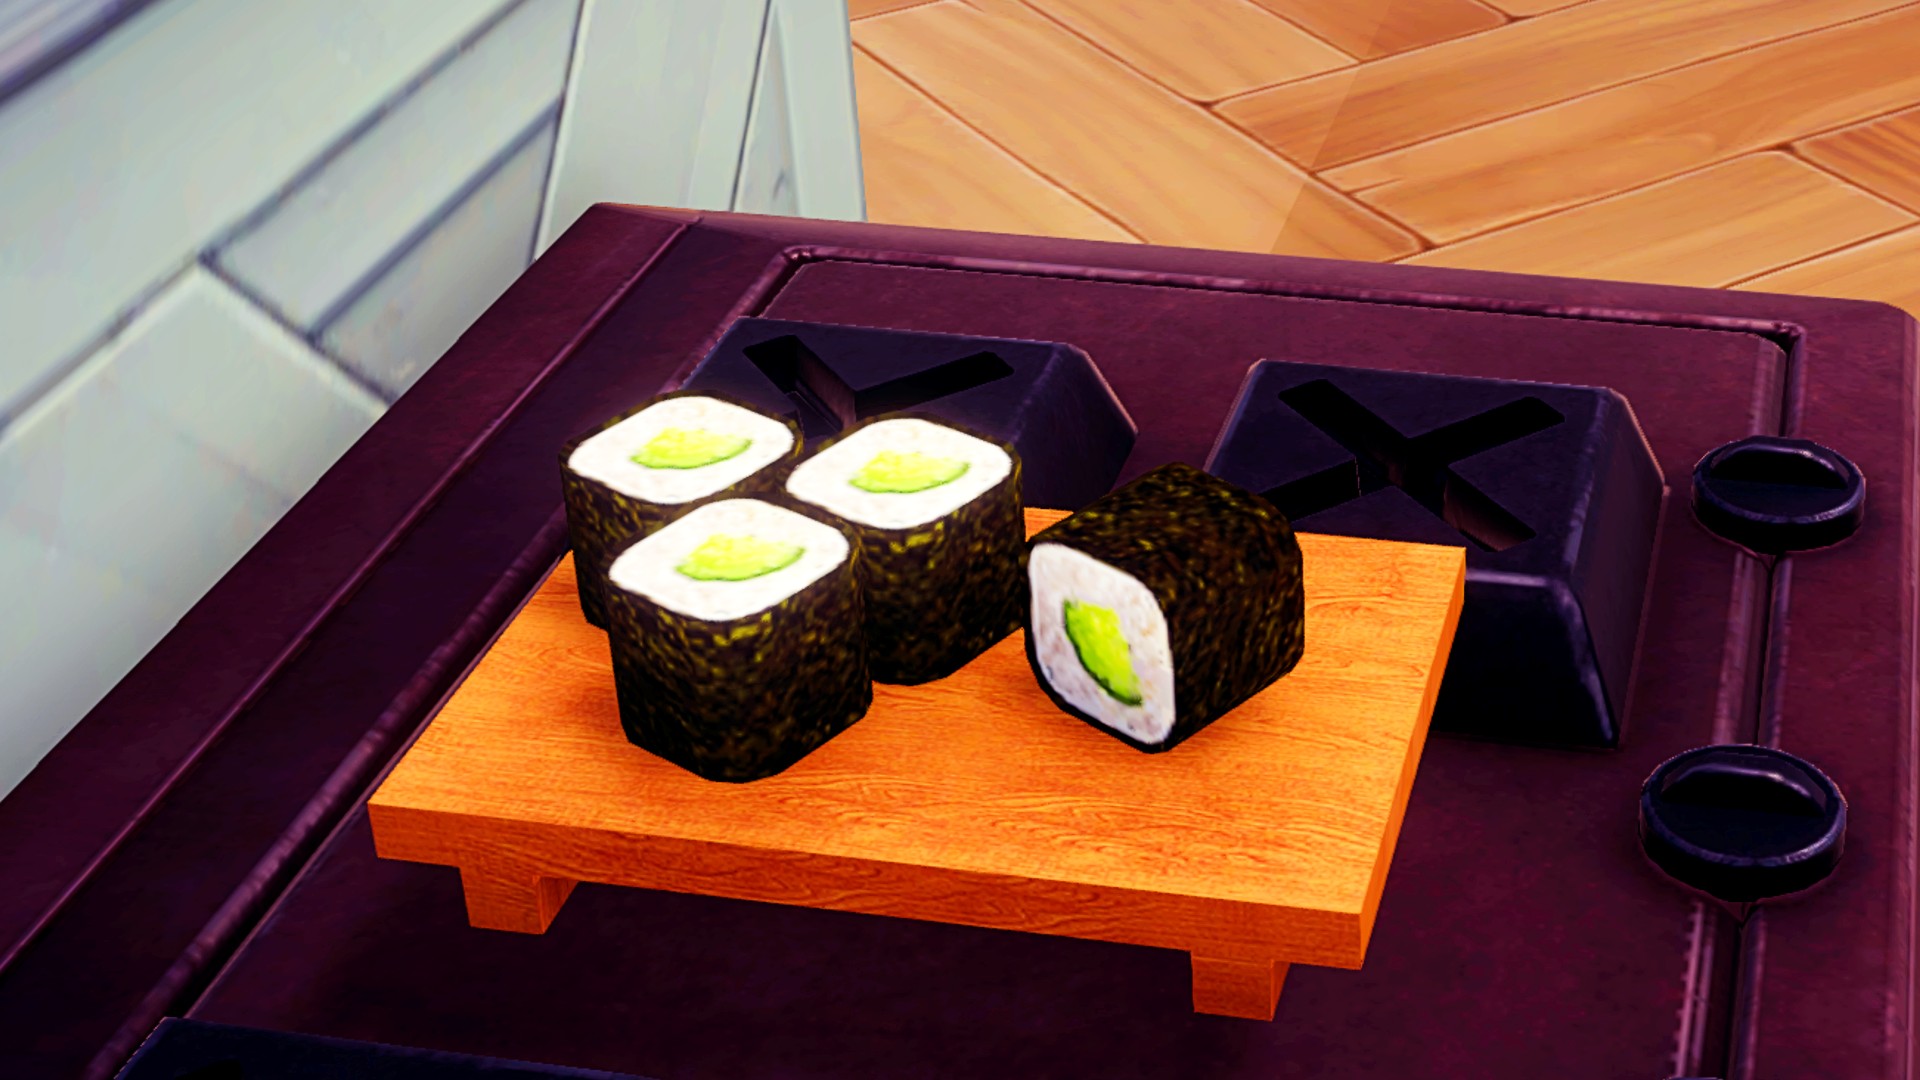 דיסני עמק Dreamlight מתכונים שלושה כוכבים: קאפה מאקי, ארבע חתיכות של סושי קאפה מאקי יושבים על מגש סושי מעץ